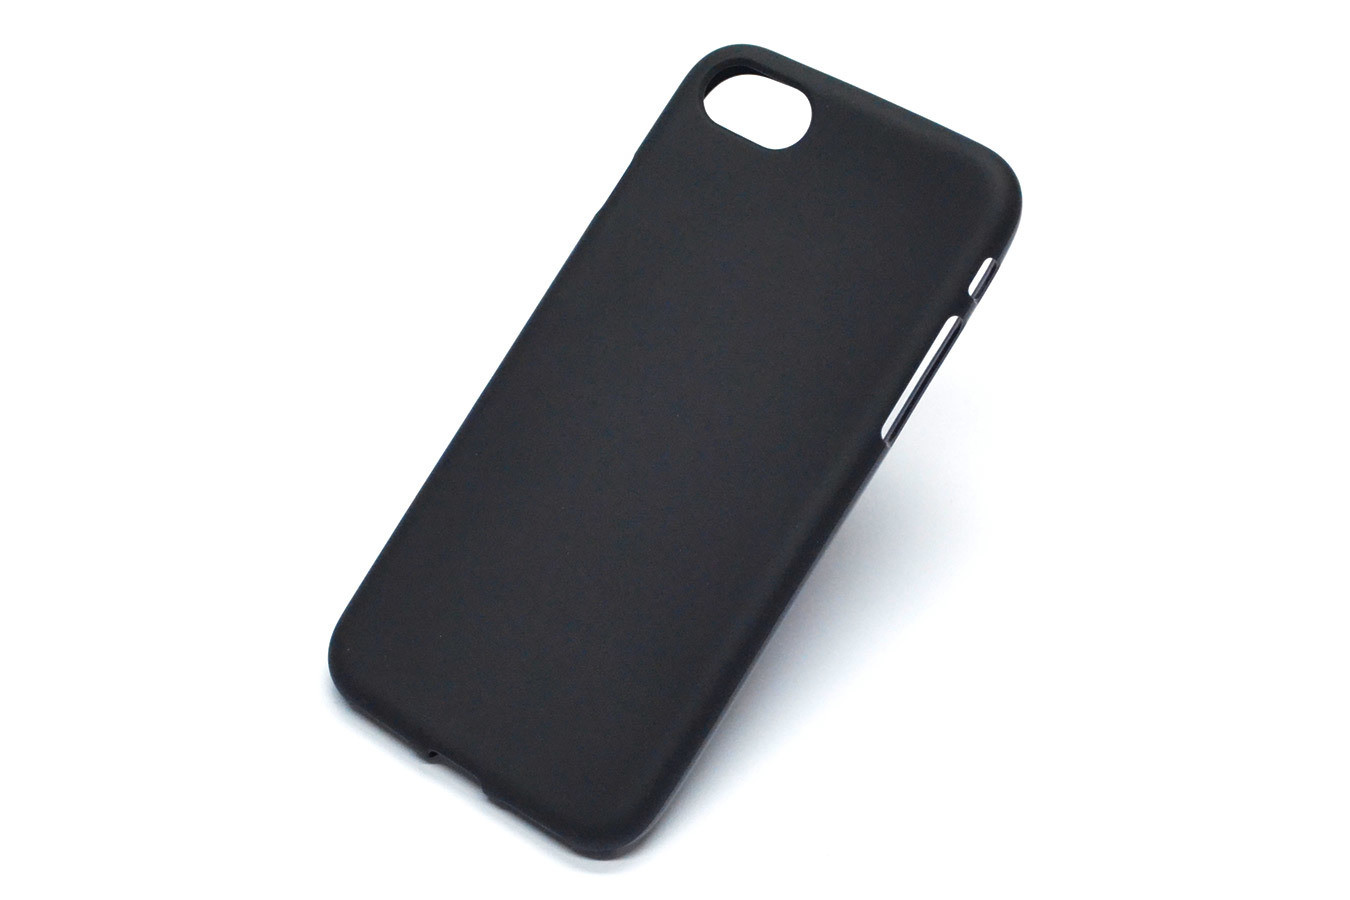 iPhone 7 Plastic Black